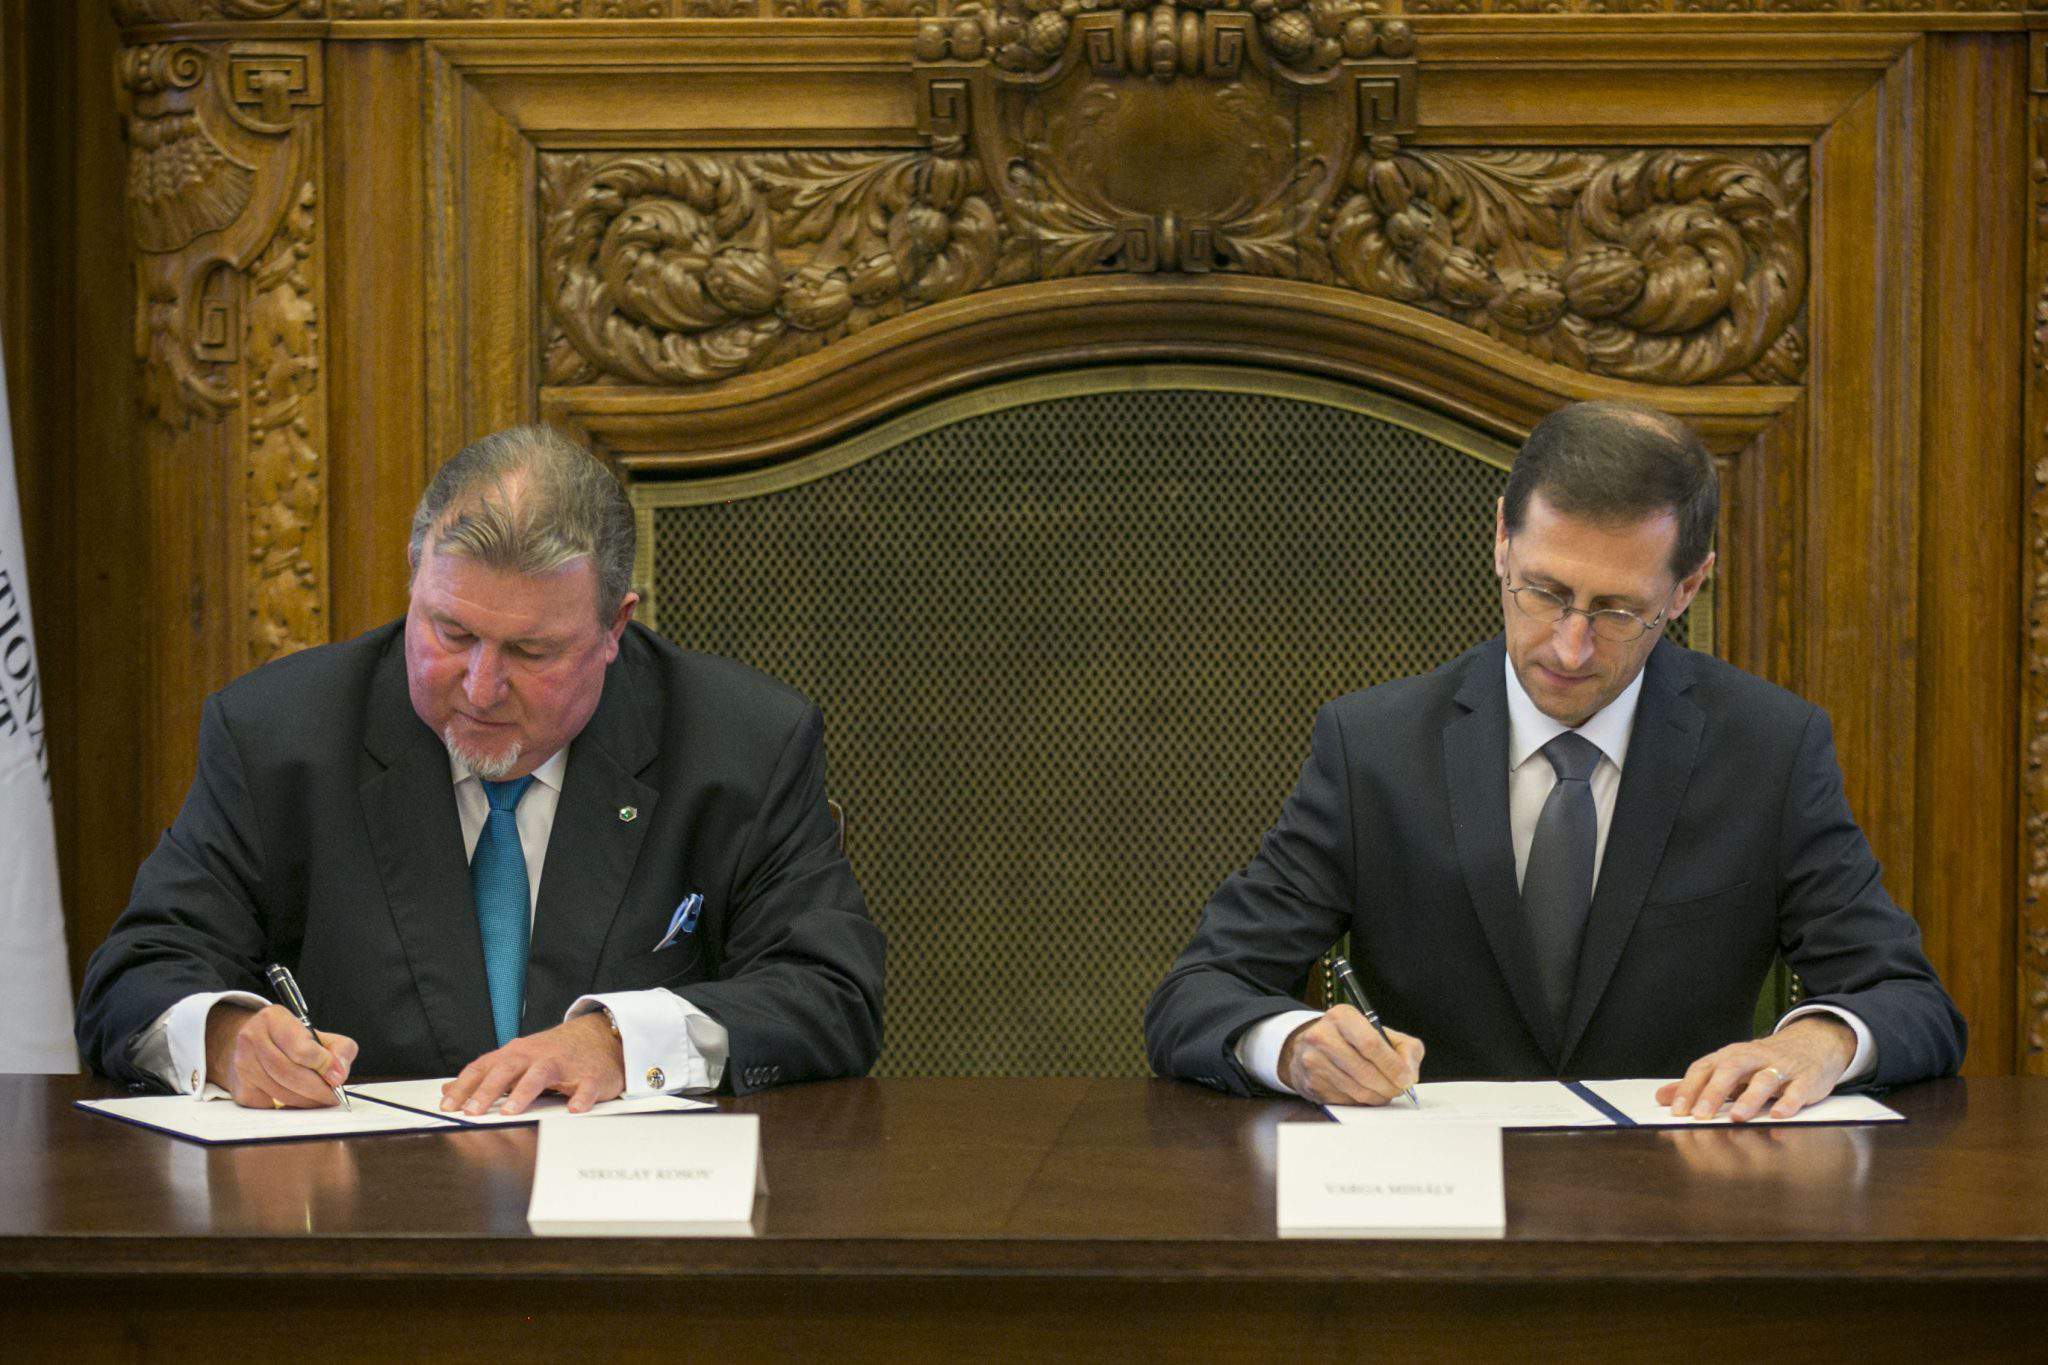 निवेश बैंक IIB, वर्गा प्रारंभिक समझौता हंगरी में क्षेत्रीय कार्यालय लाने के लिए